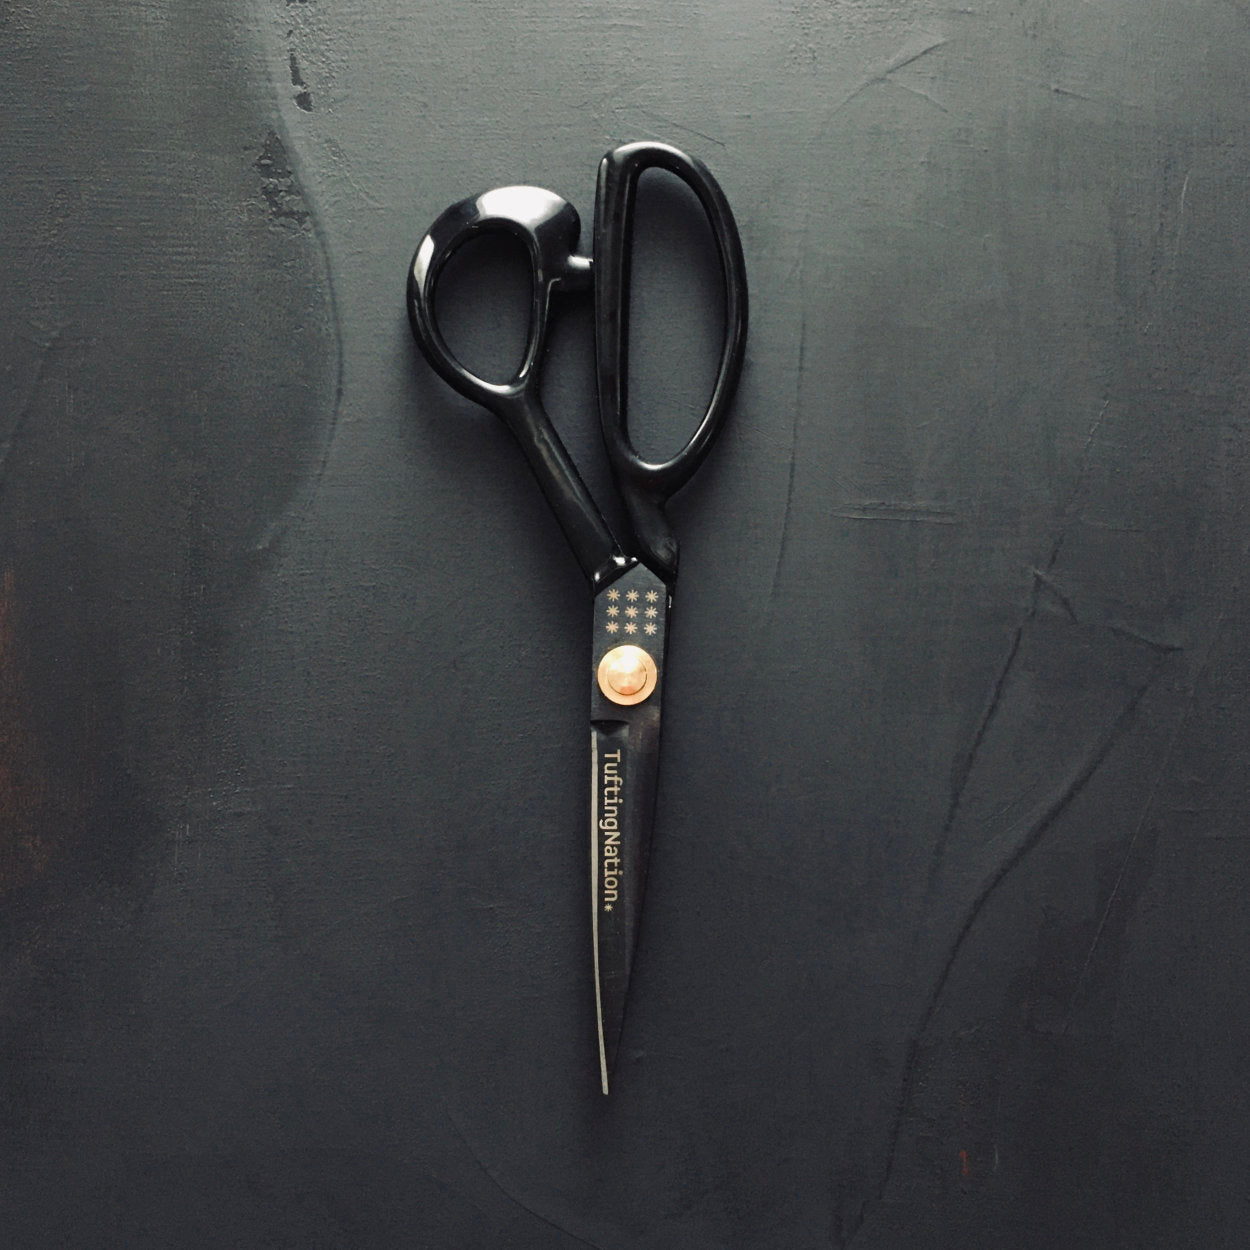 Duckbill scissors - EMO TUFT